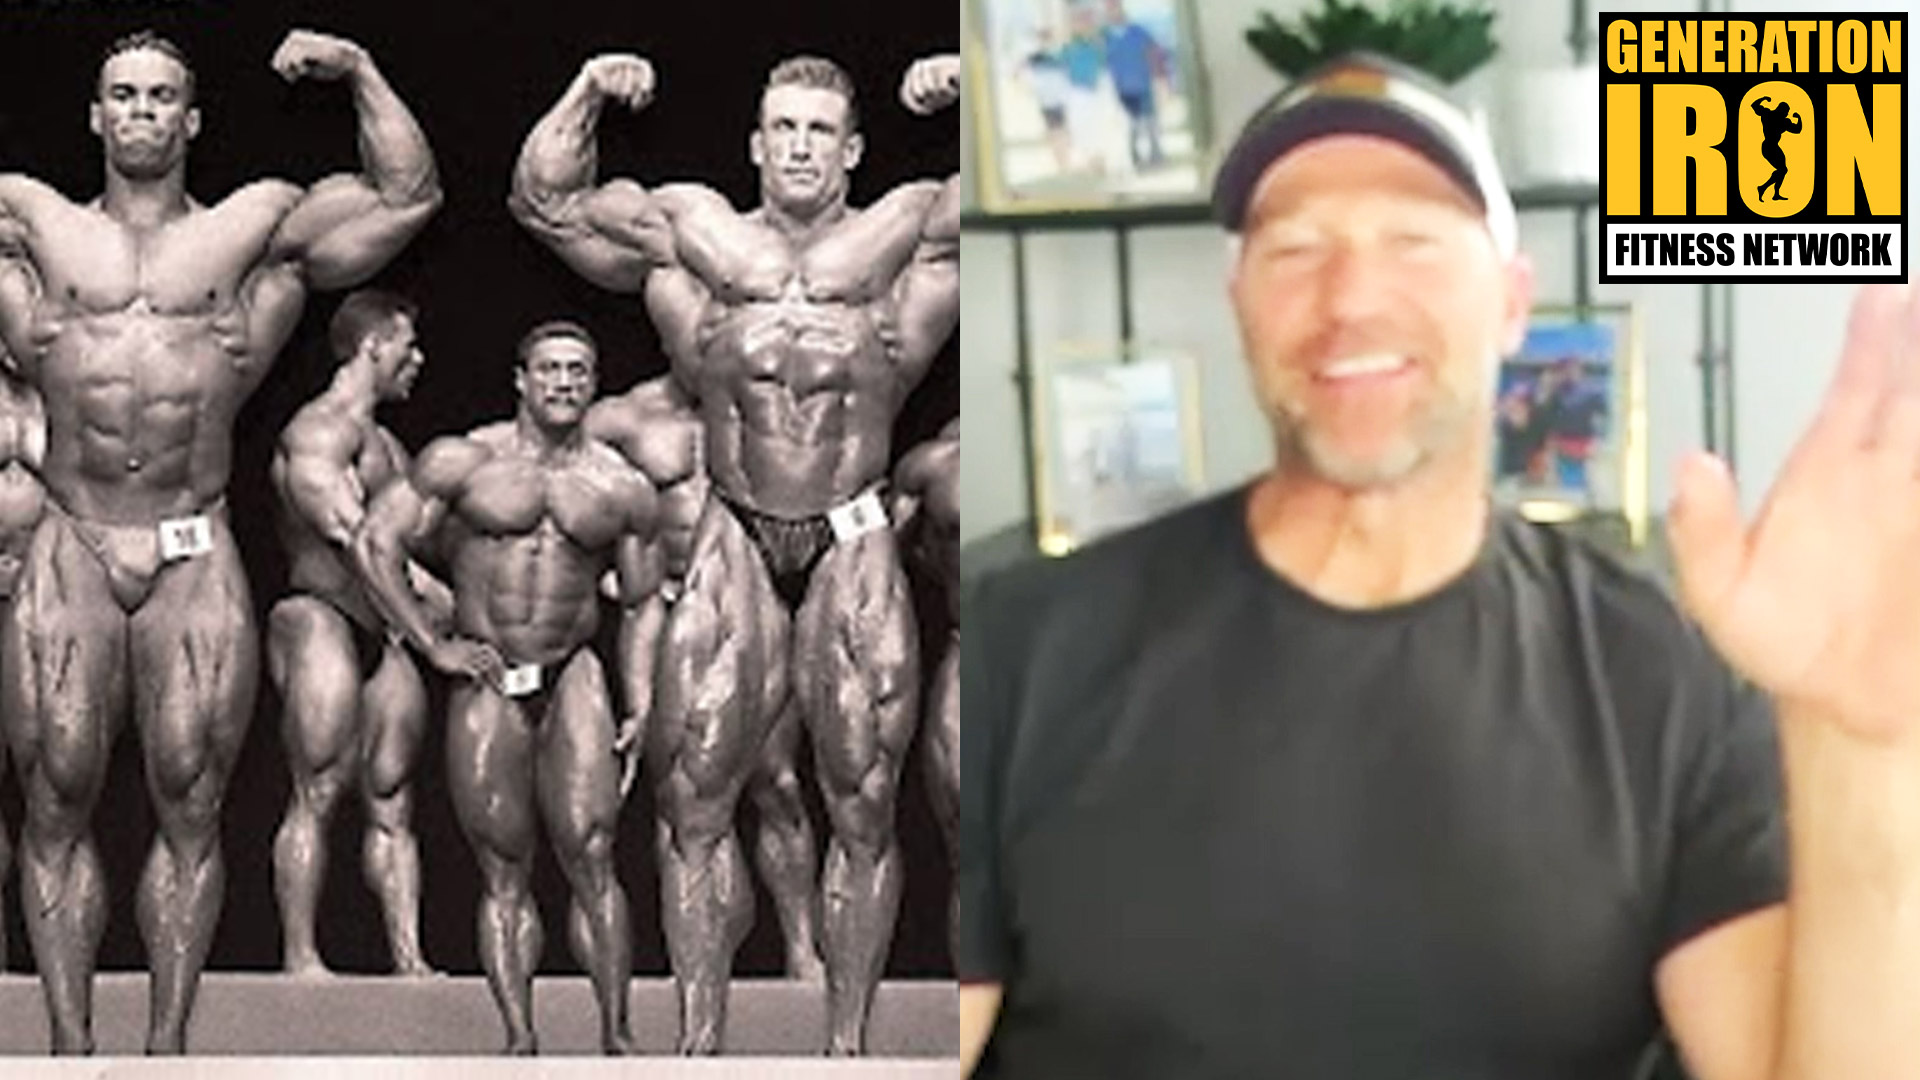 Gunter Schlierkamp: I Competed In Bodybuilding When It Was At Its Best